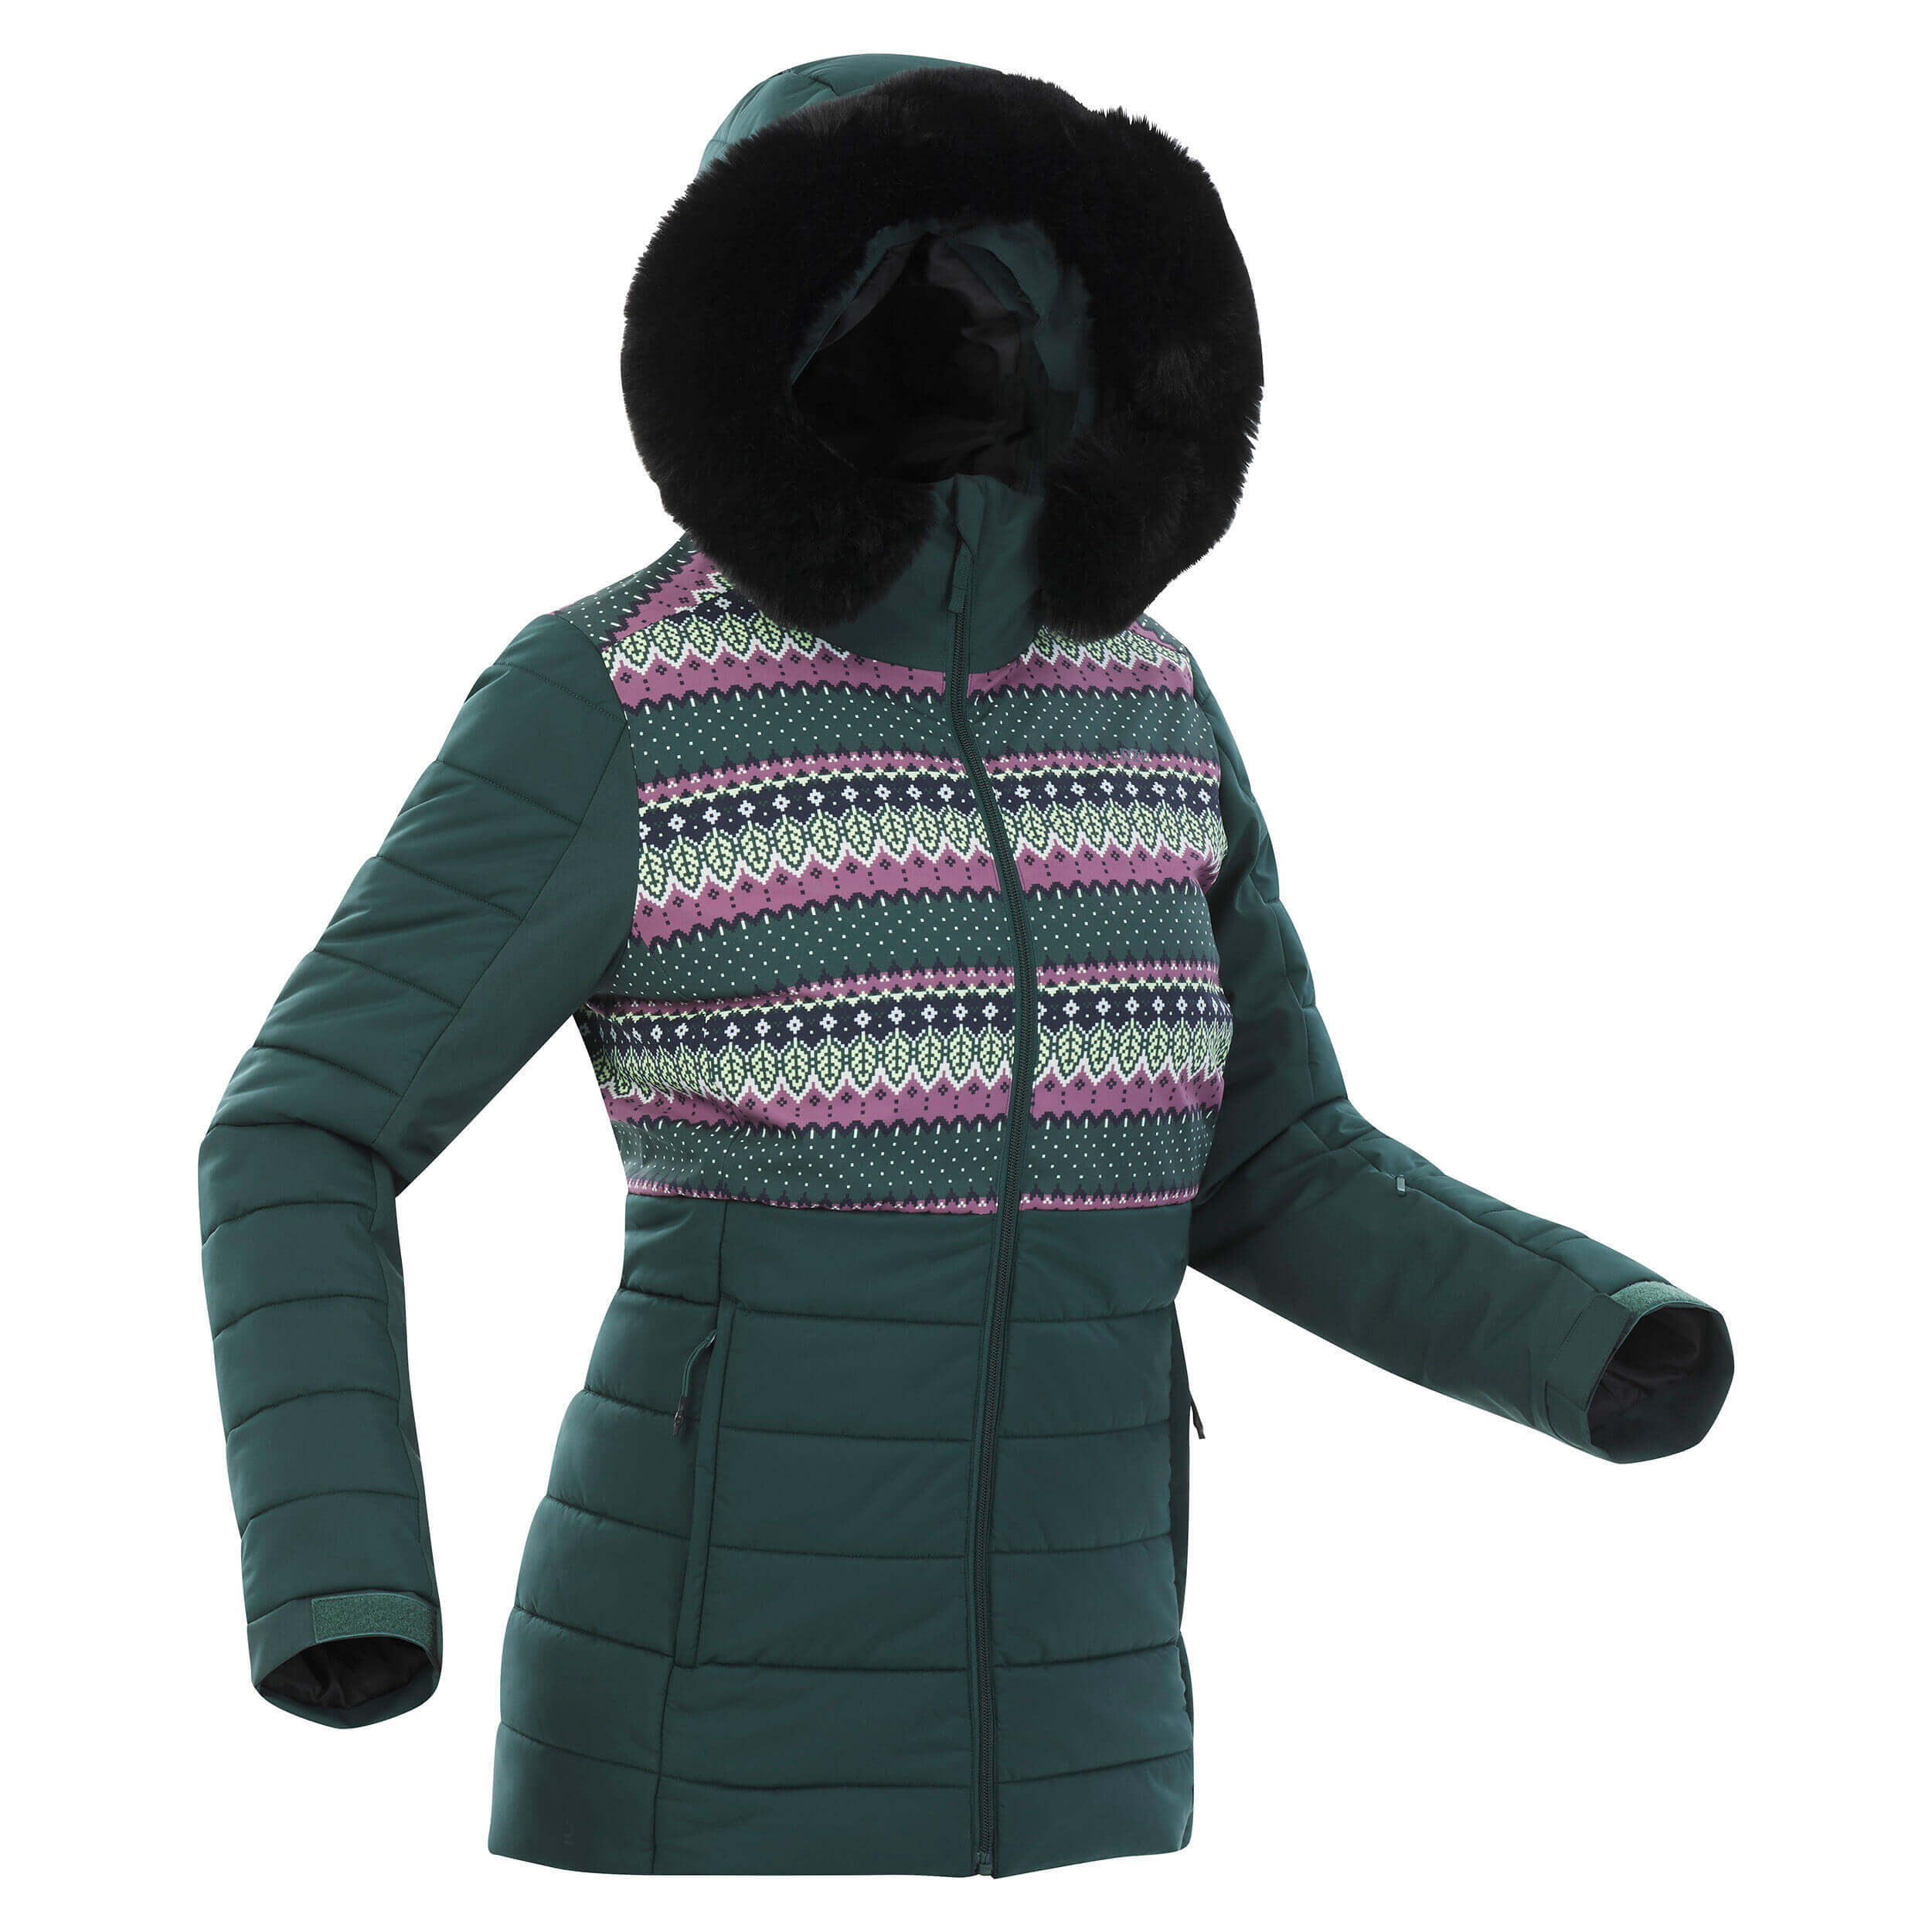 Куртка лыжная Wedze Ski Wedze 100 Warm, темно-зеленый